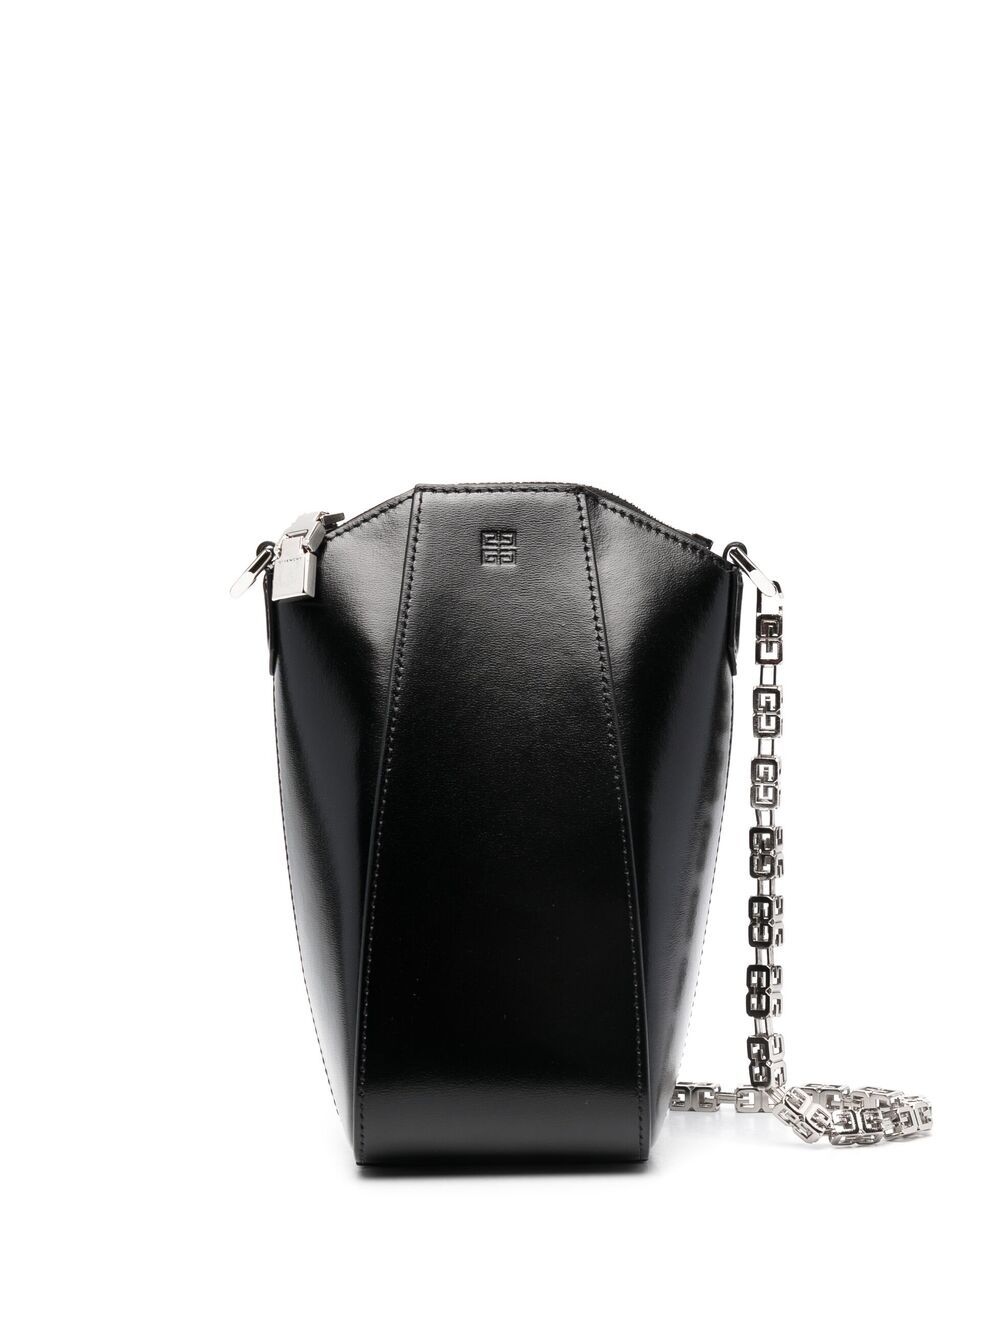 фото Givenchy мини-сумка antigona